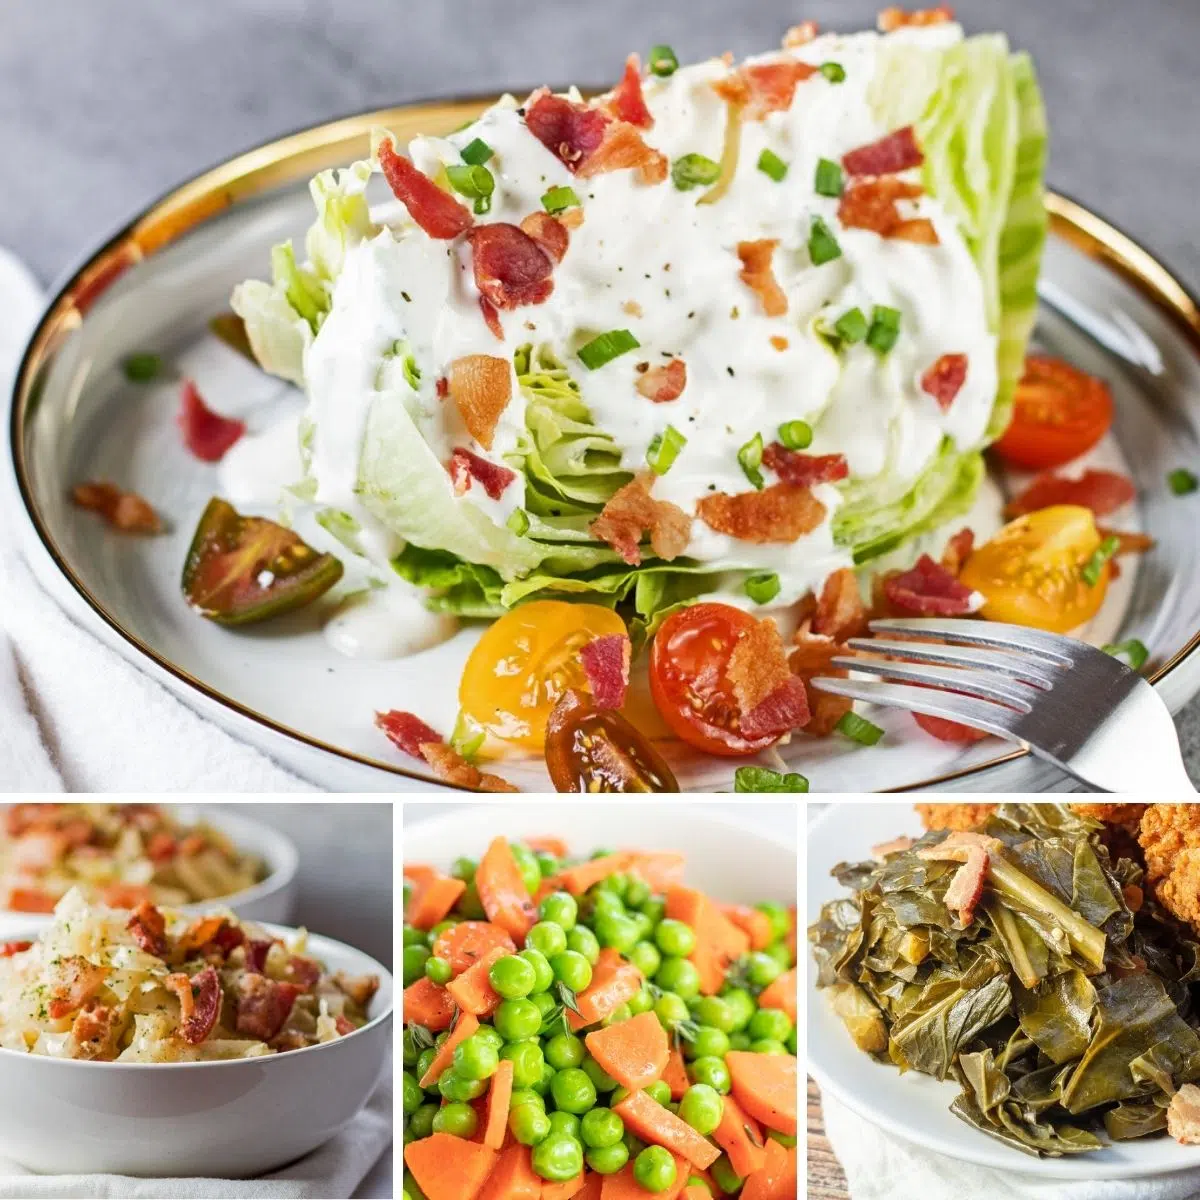 I migliori contorni di verdure da servire con qualsiasi pasto, come mostrato con queste 4 ricette in primo piano in un'immagine collage.